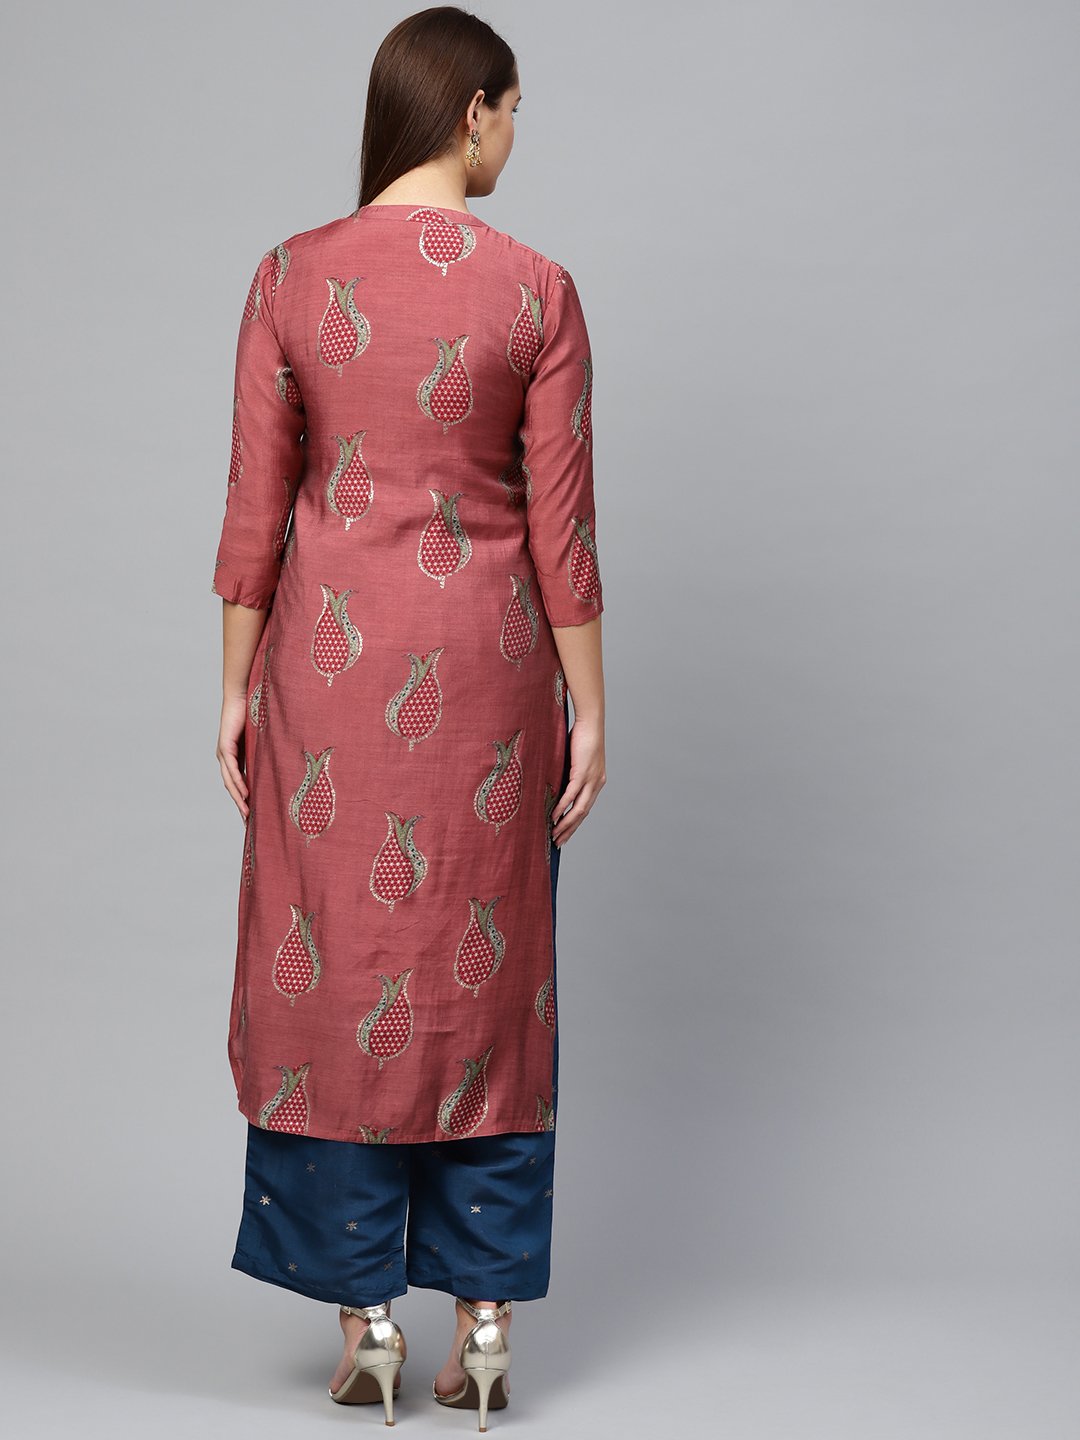 Ishin Women's Silk Blend Rose Pink & Blue Embellished A-Line Kurta Palazzo Set